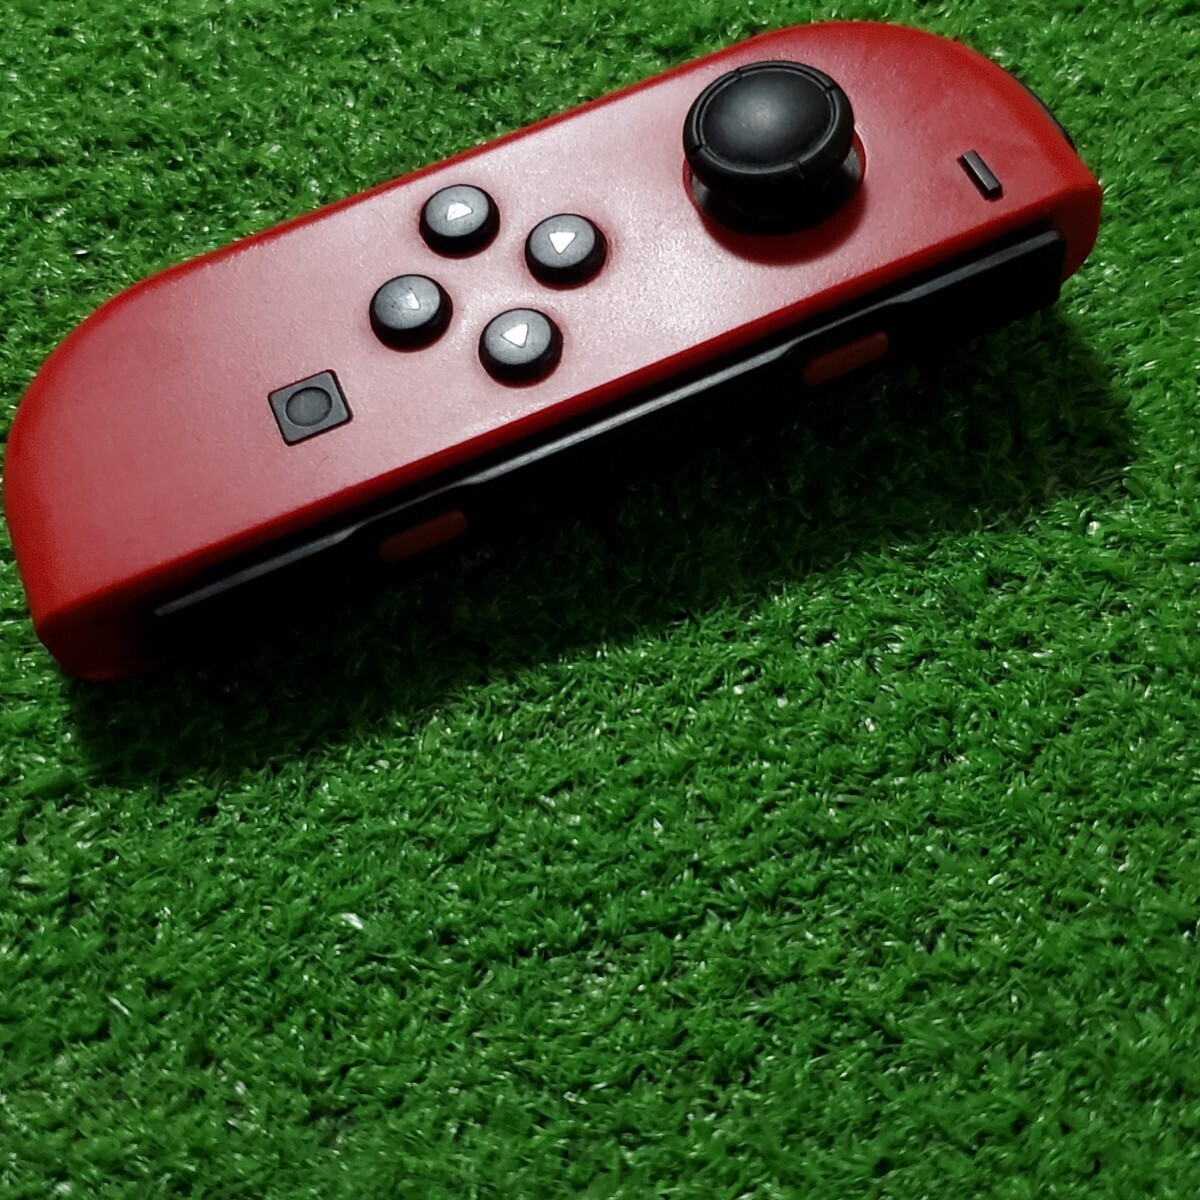 Nintendo Switch ニンテンドースイッチ ジョイコン 動作確認済み レッド Joy-Con コントローラー 任天堂 (L) (R) コントローラ ストラップ